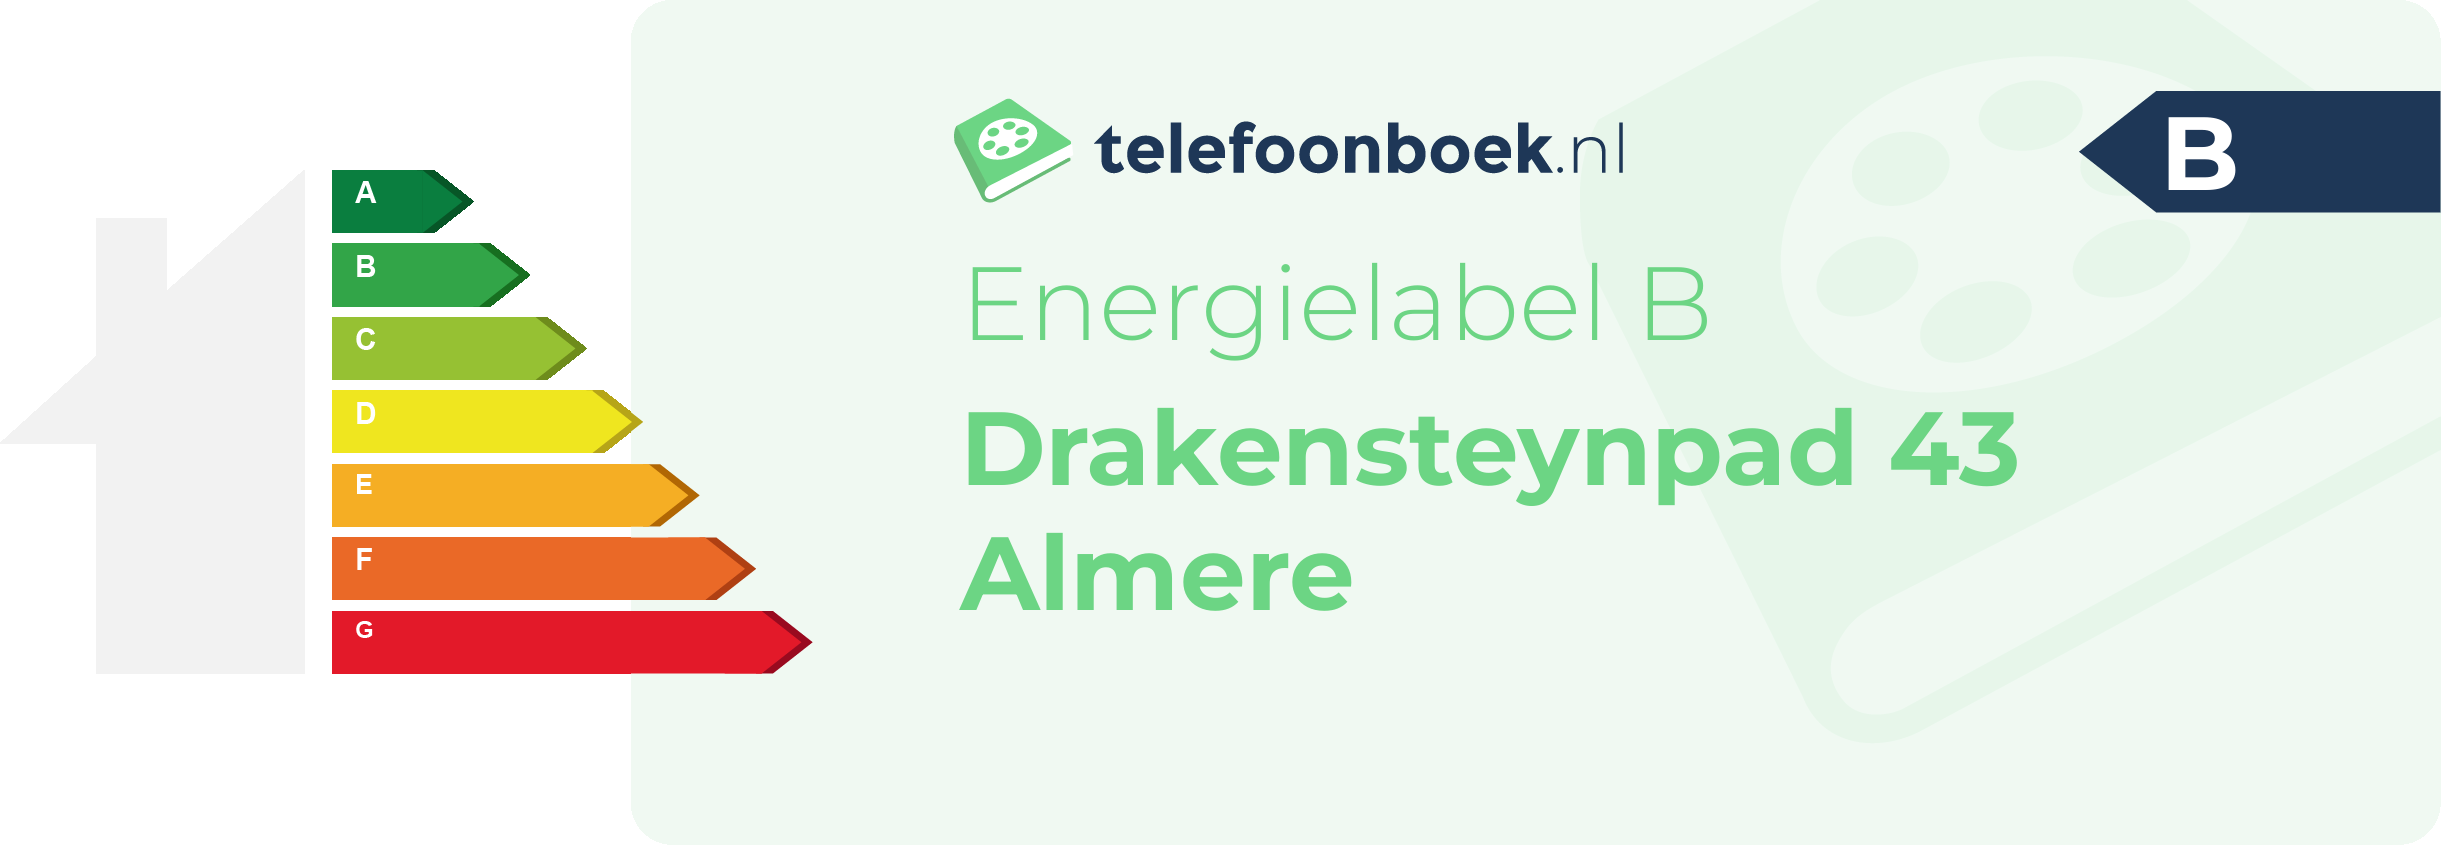 Energielabel Drakensteynpad 43 Almere